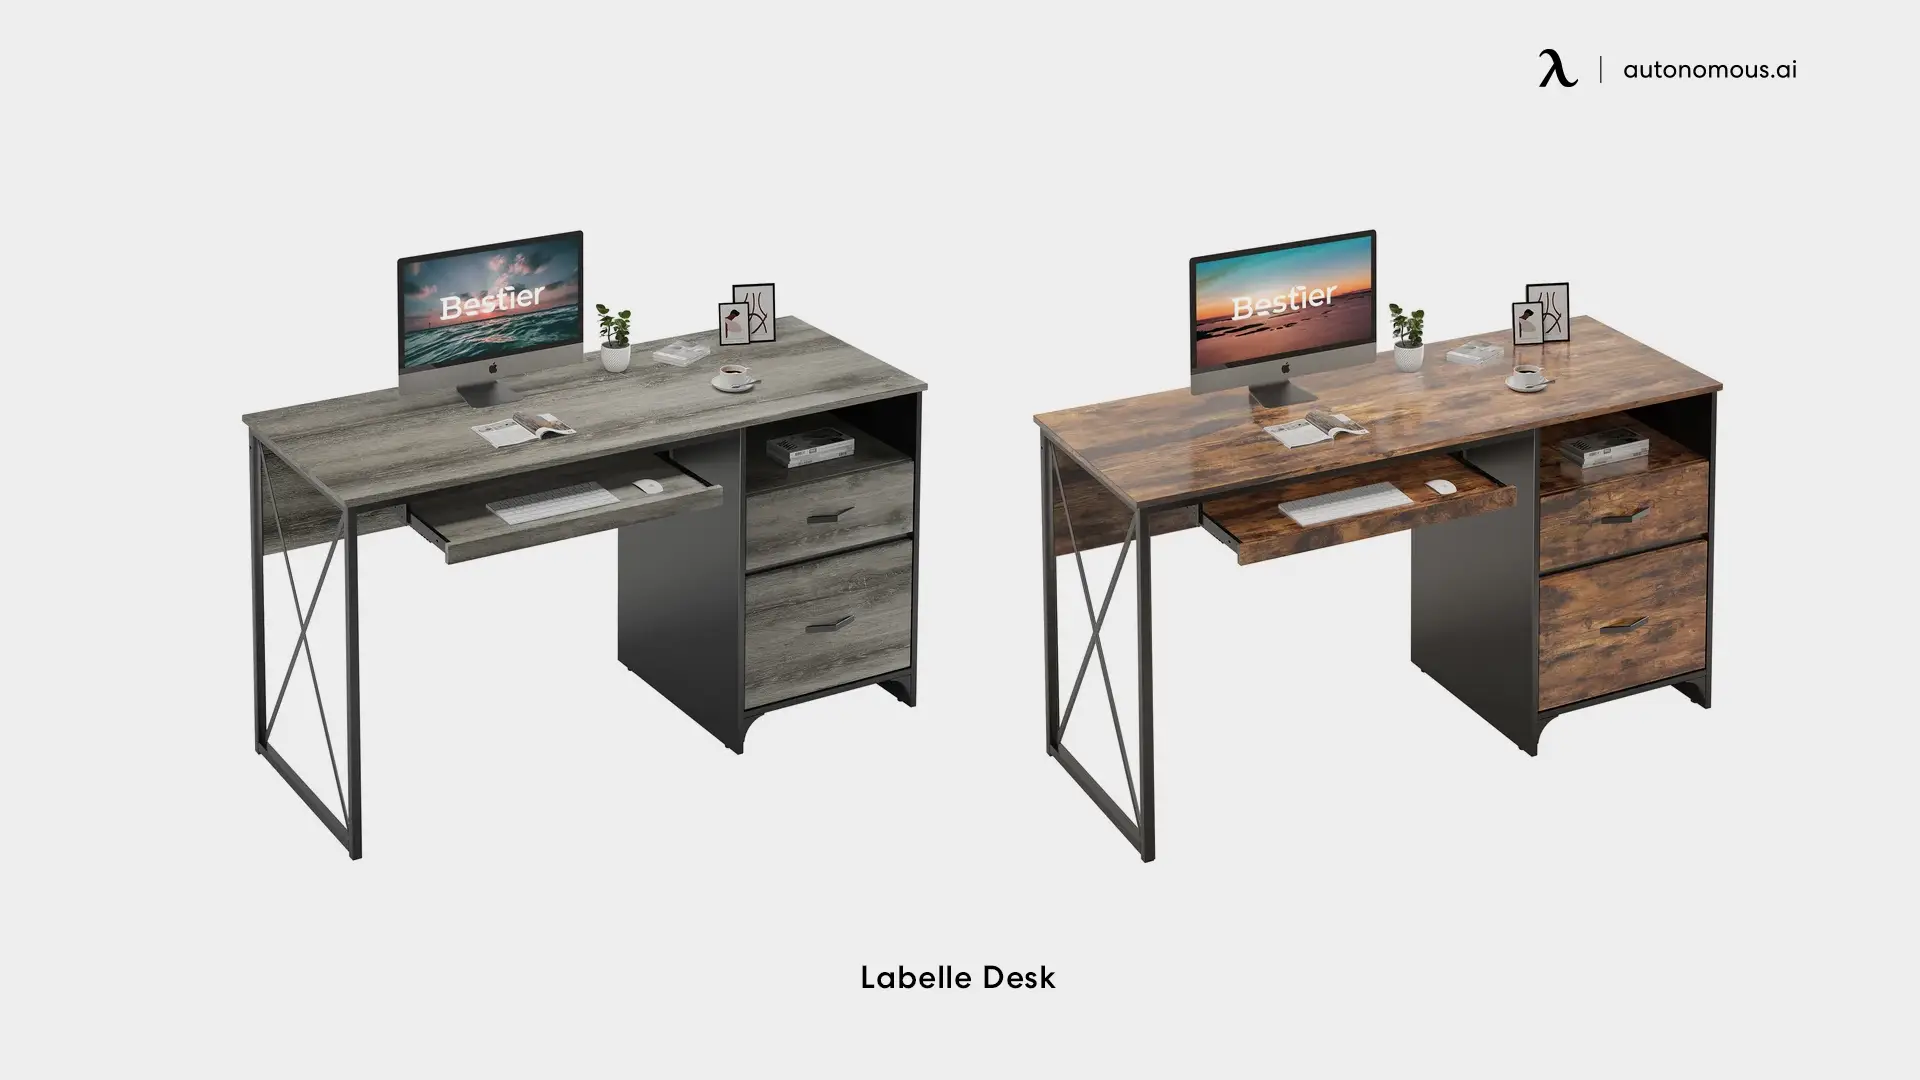 Labelle Desk - adjustable desk with drawers